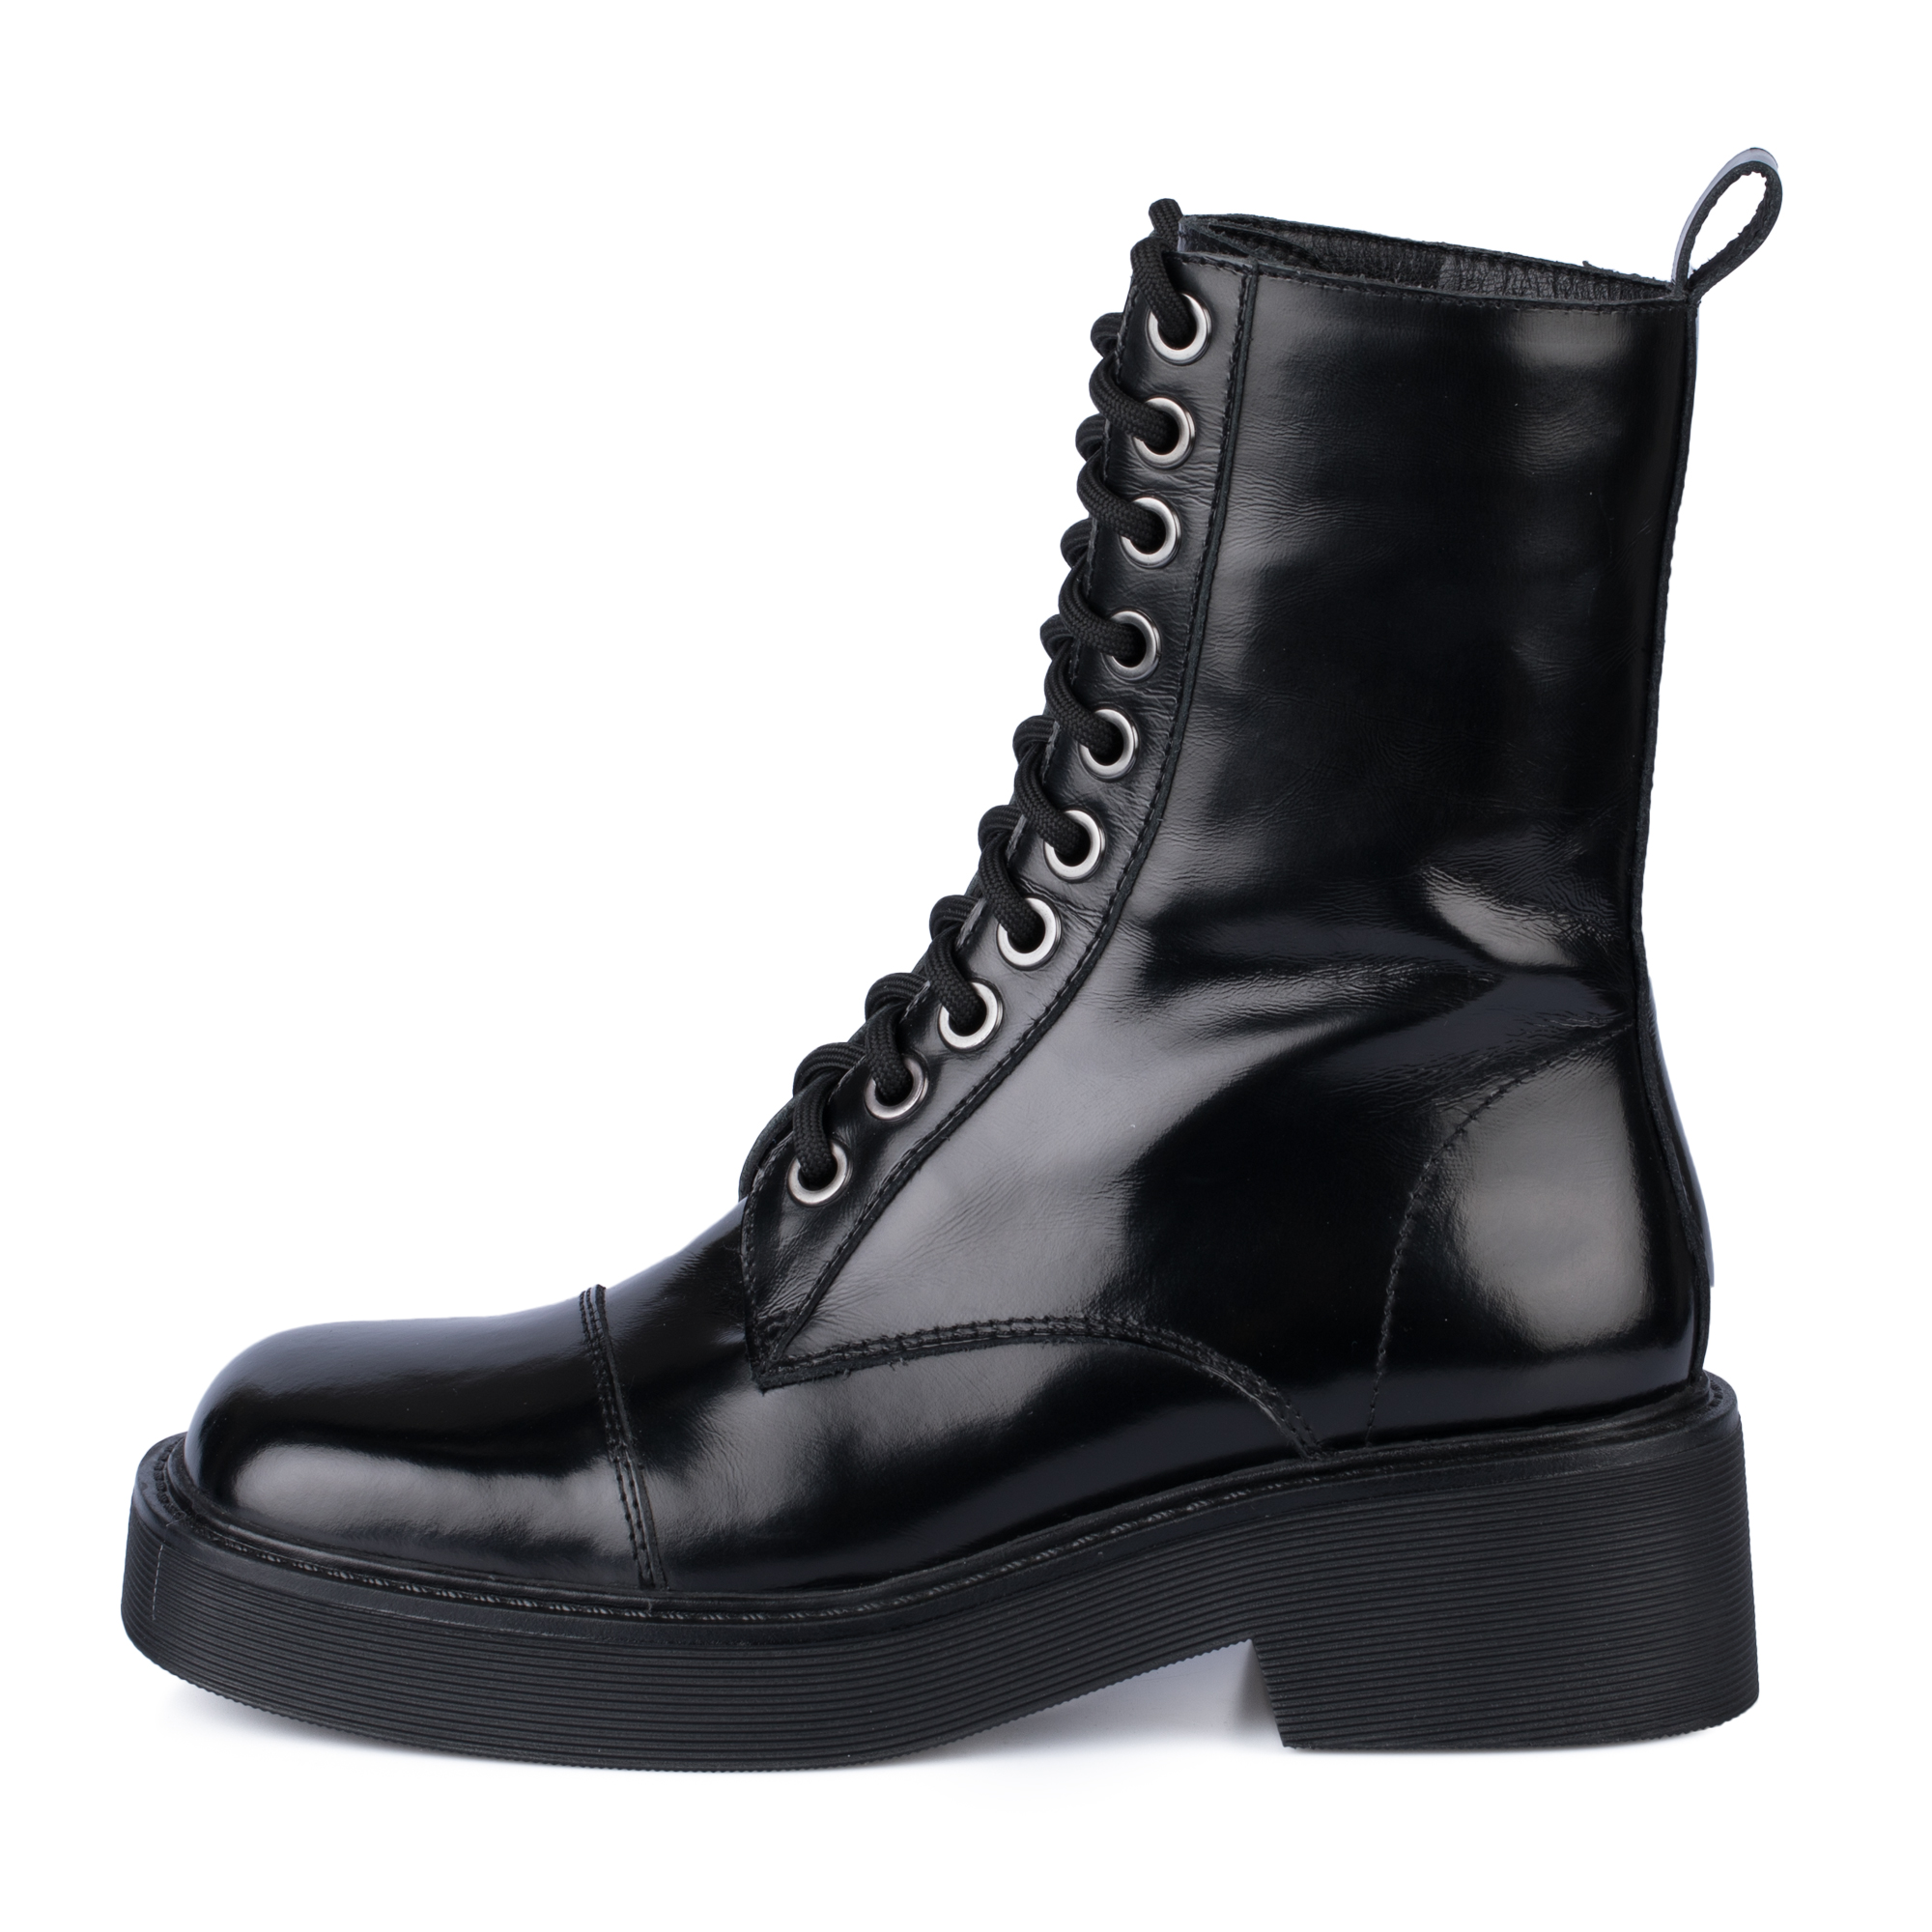 Ботинки Thomas Munz 126-400A-2102, цвет черный, размер 36 - фото 1